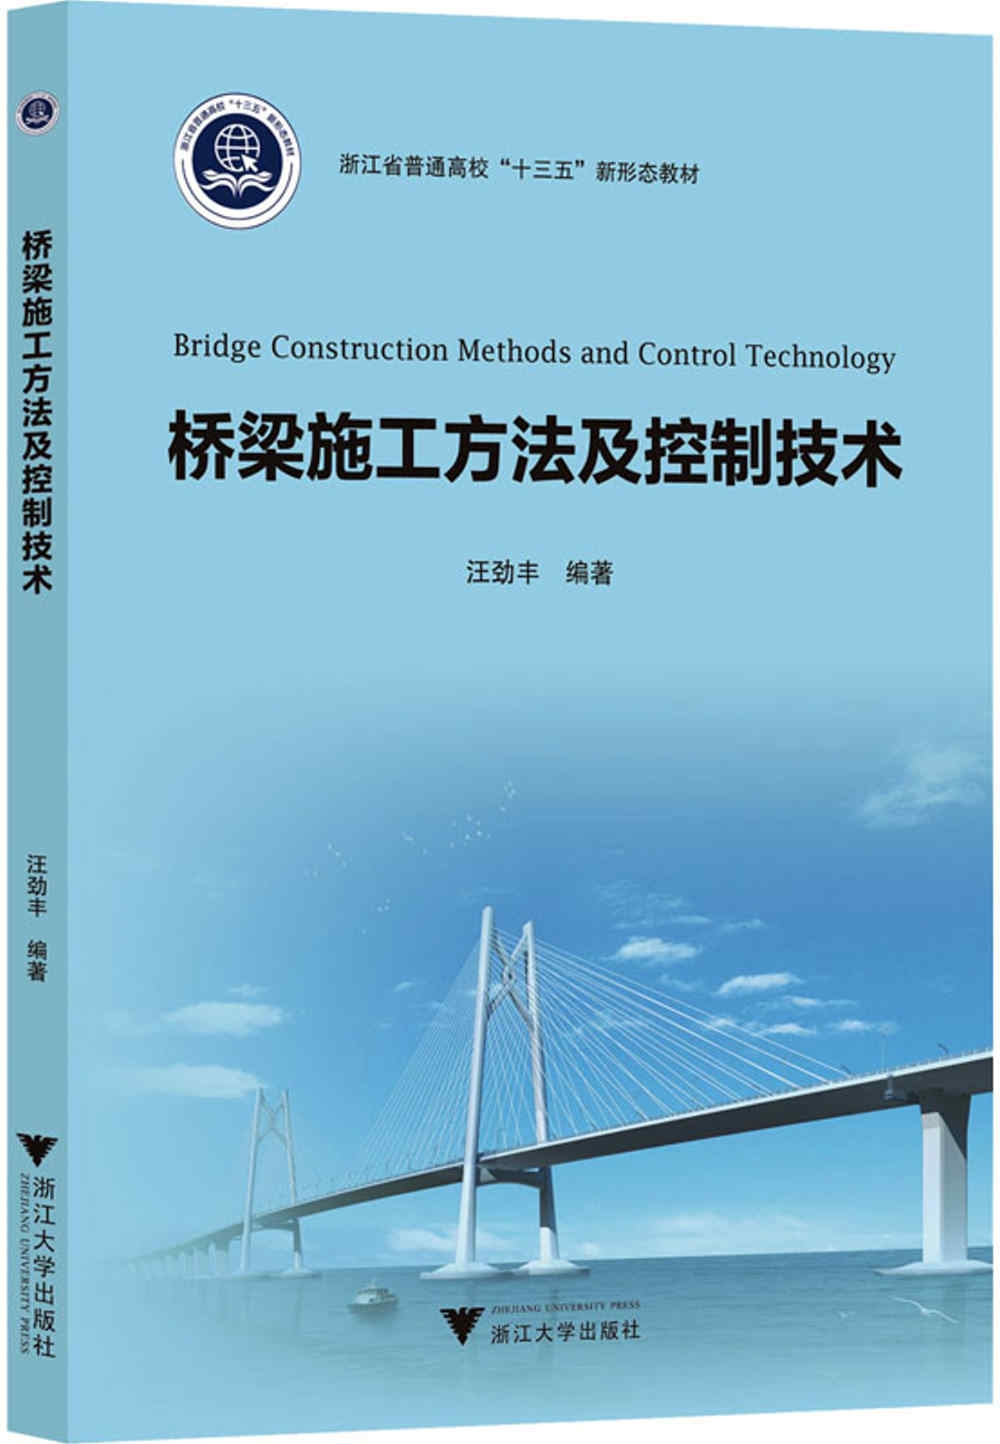 橋樑施工方法及控制技術